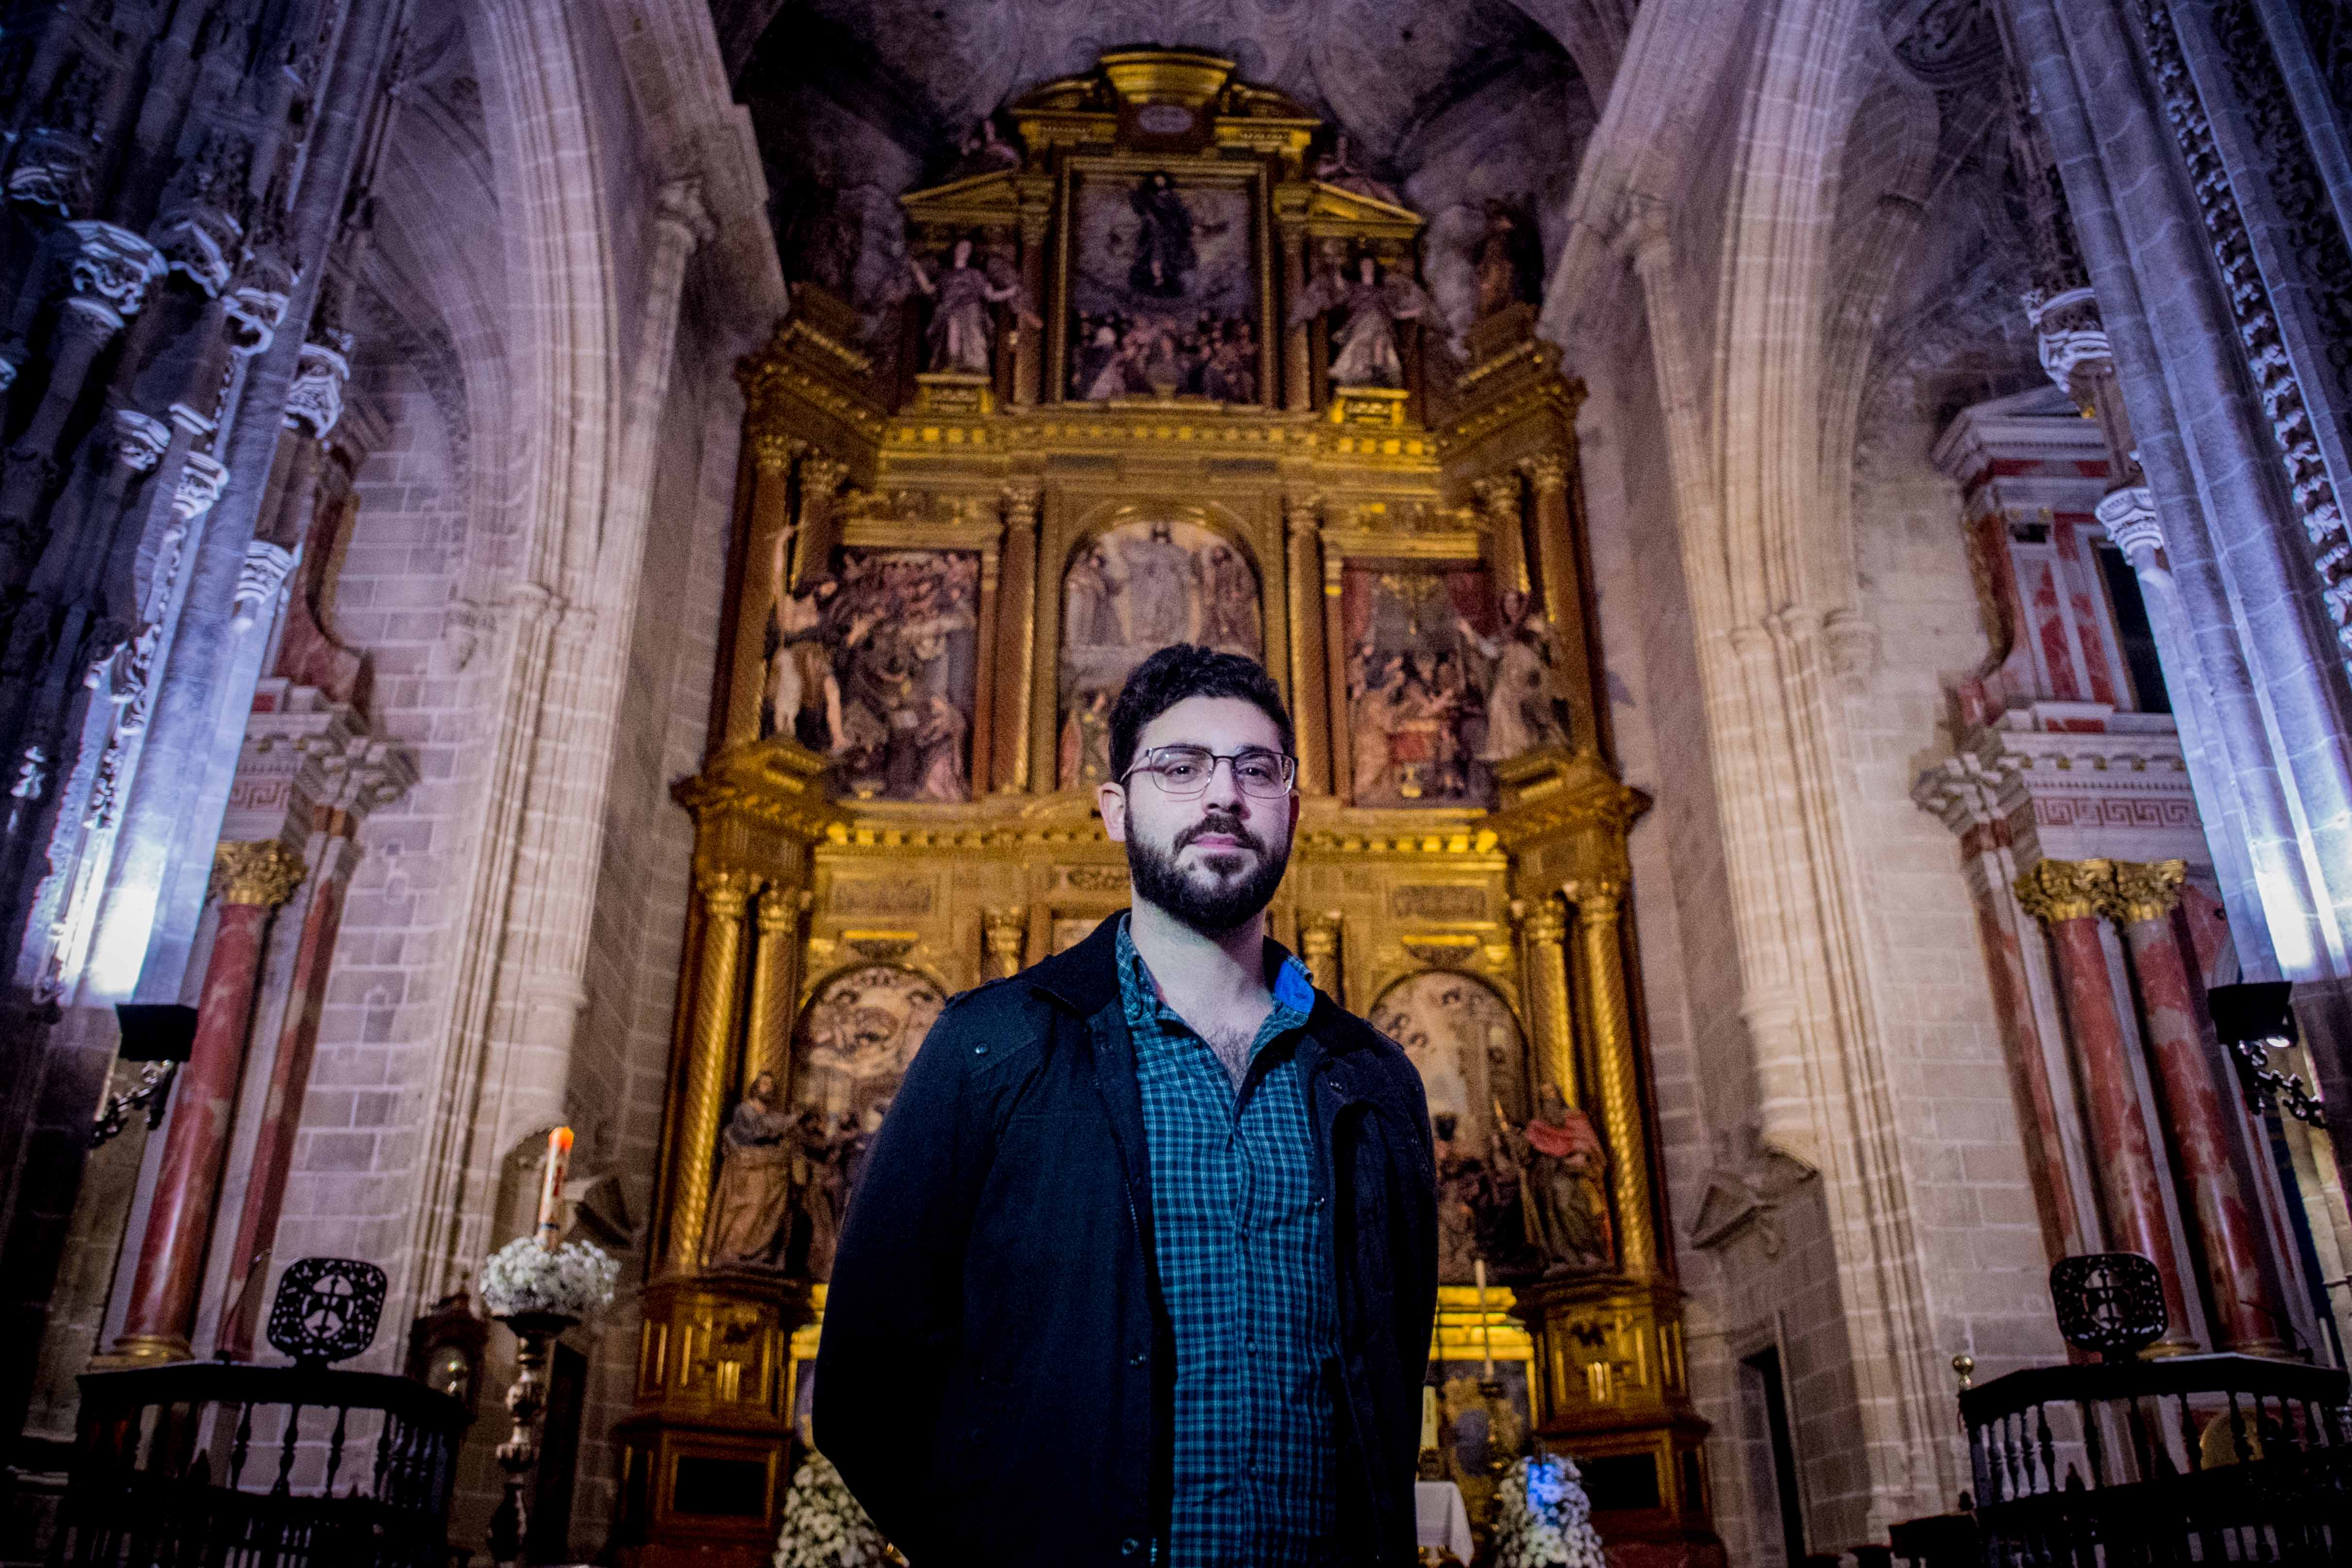 El retablo de San Miguel: historias y curiosidades de una obra inmensa